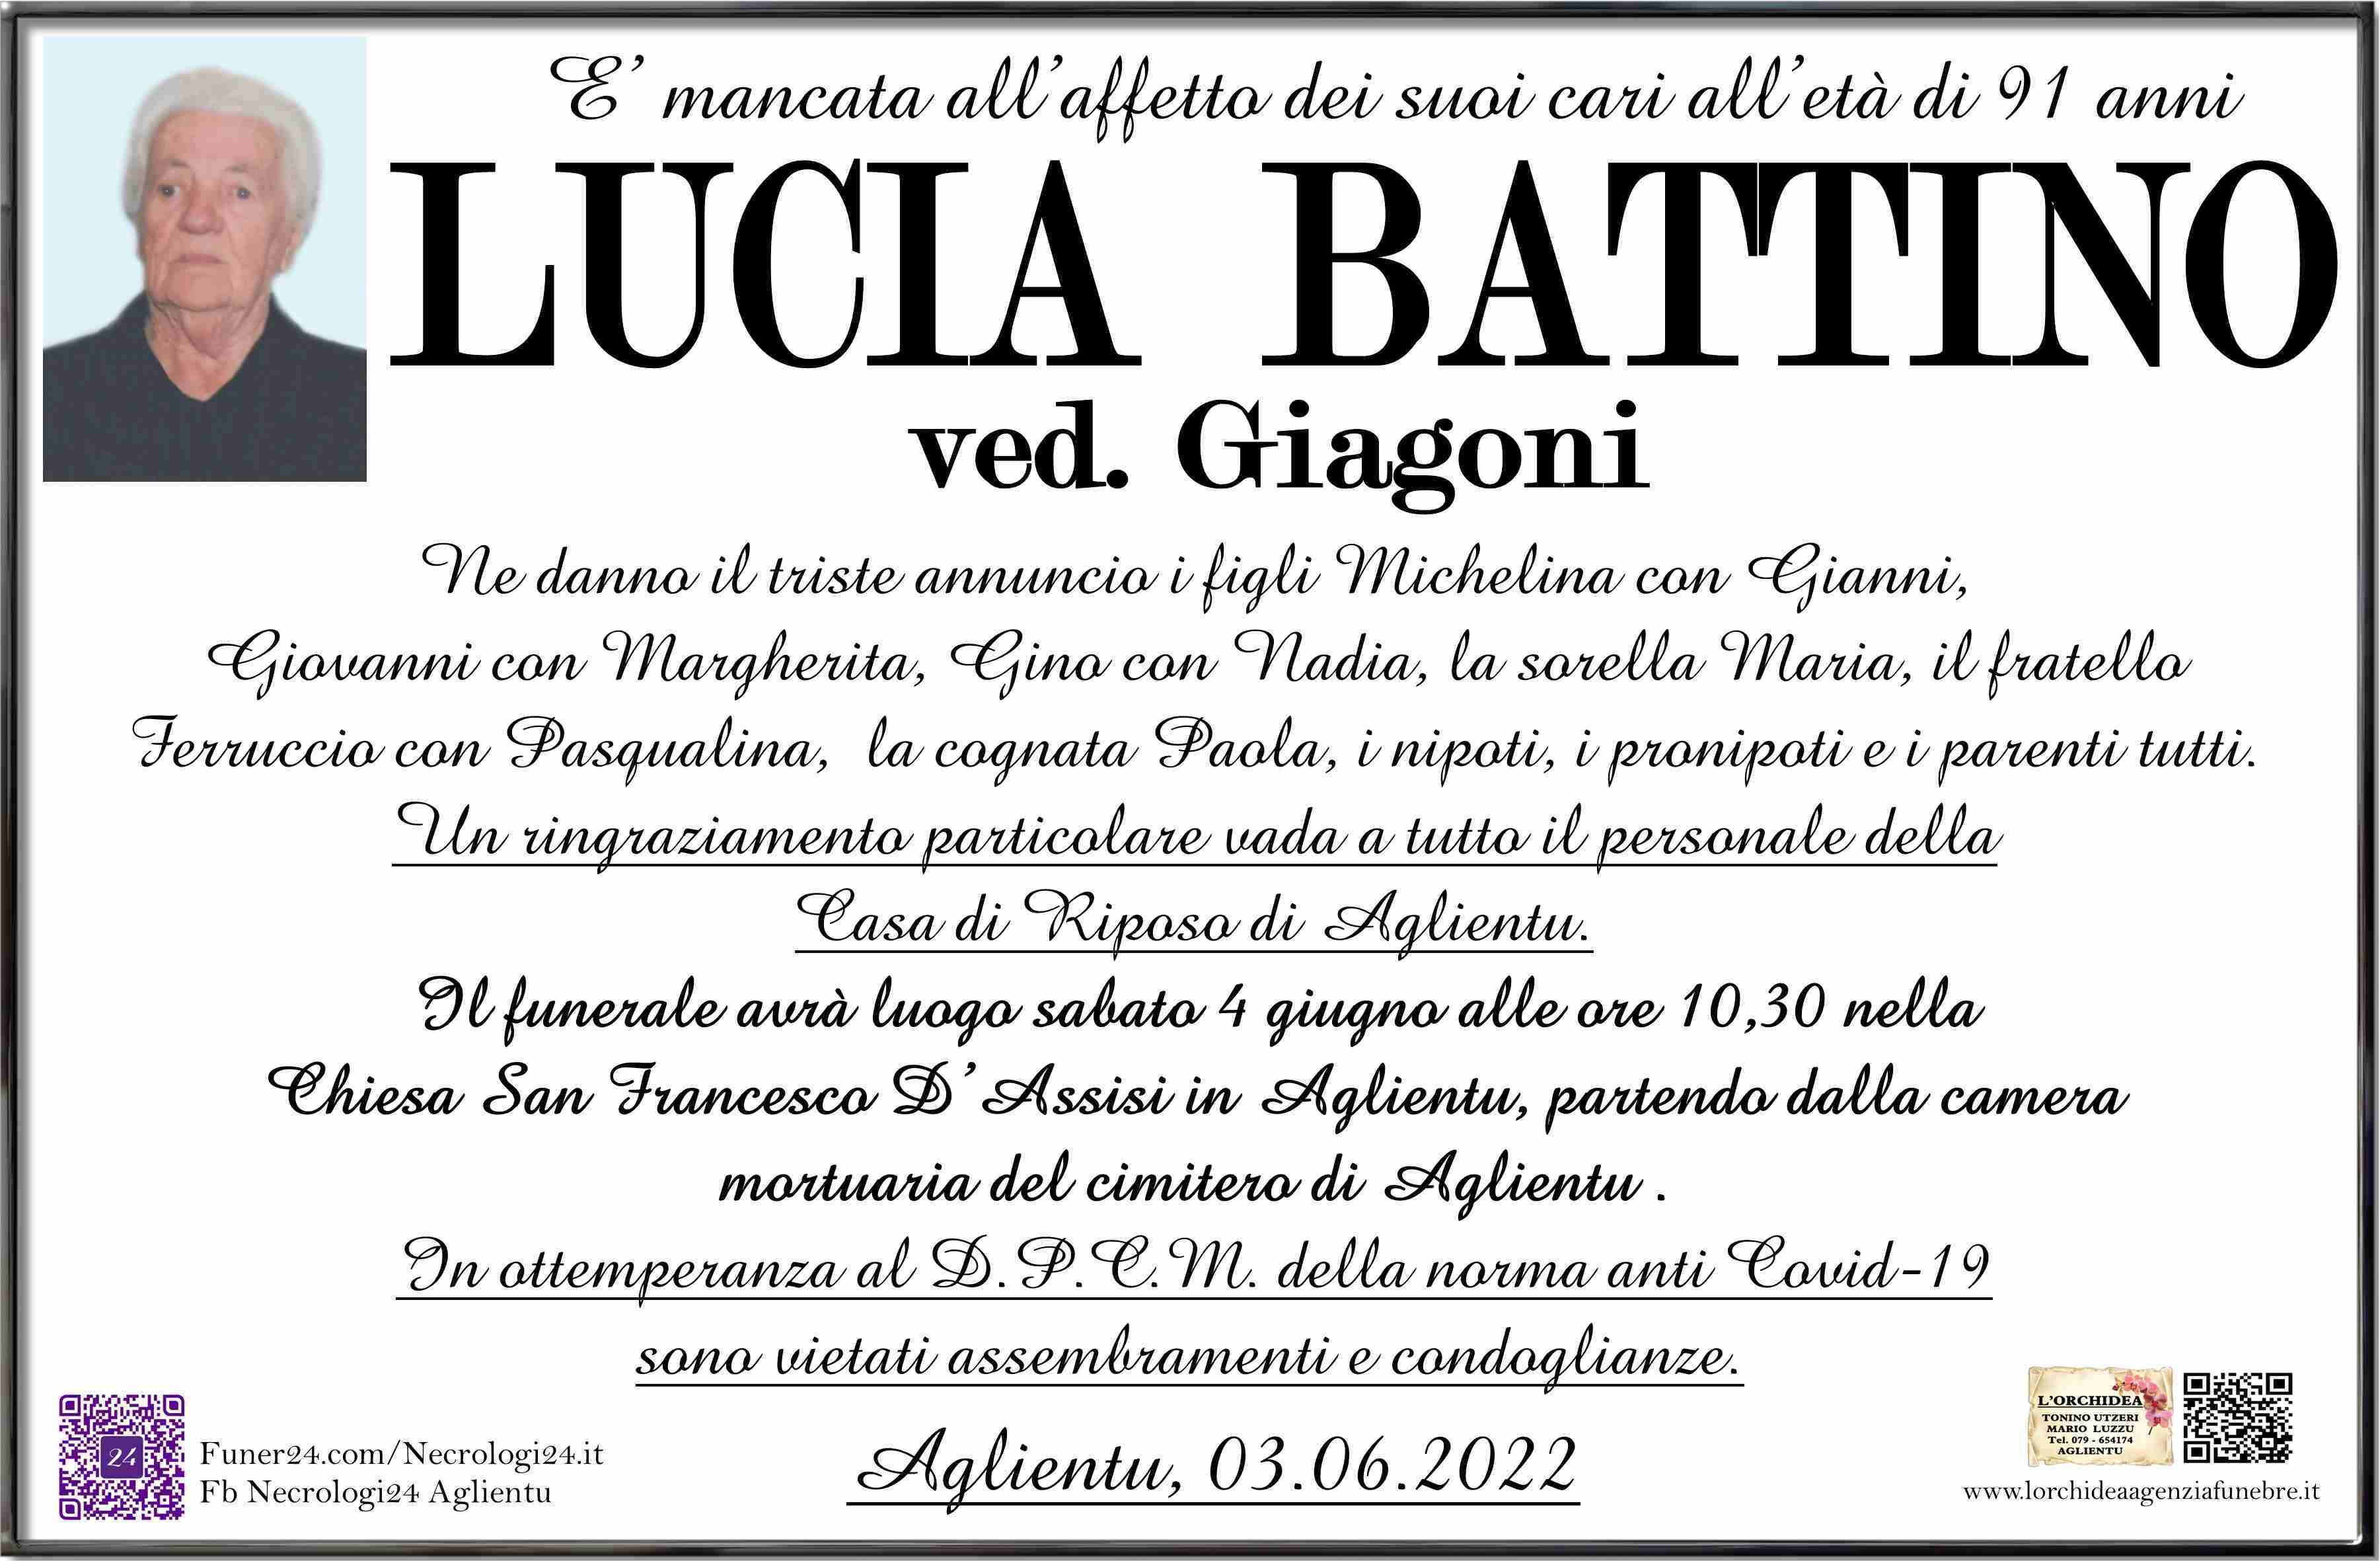 Lucia Battino